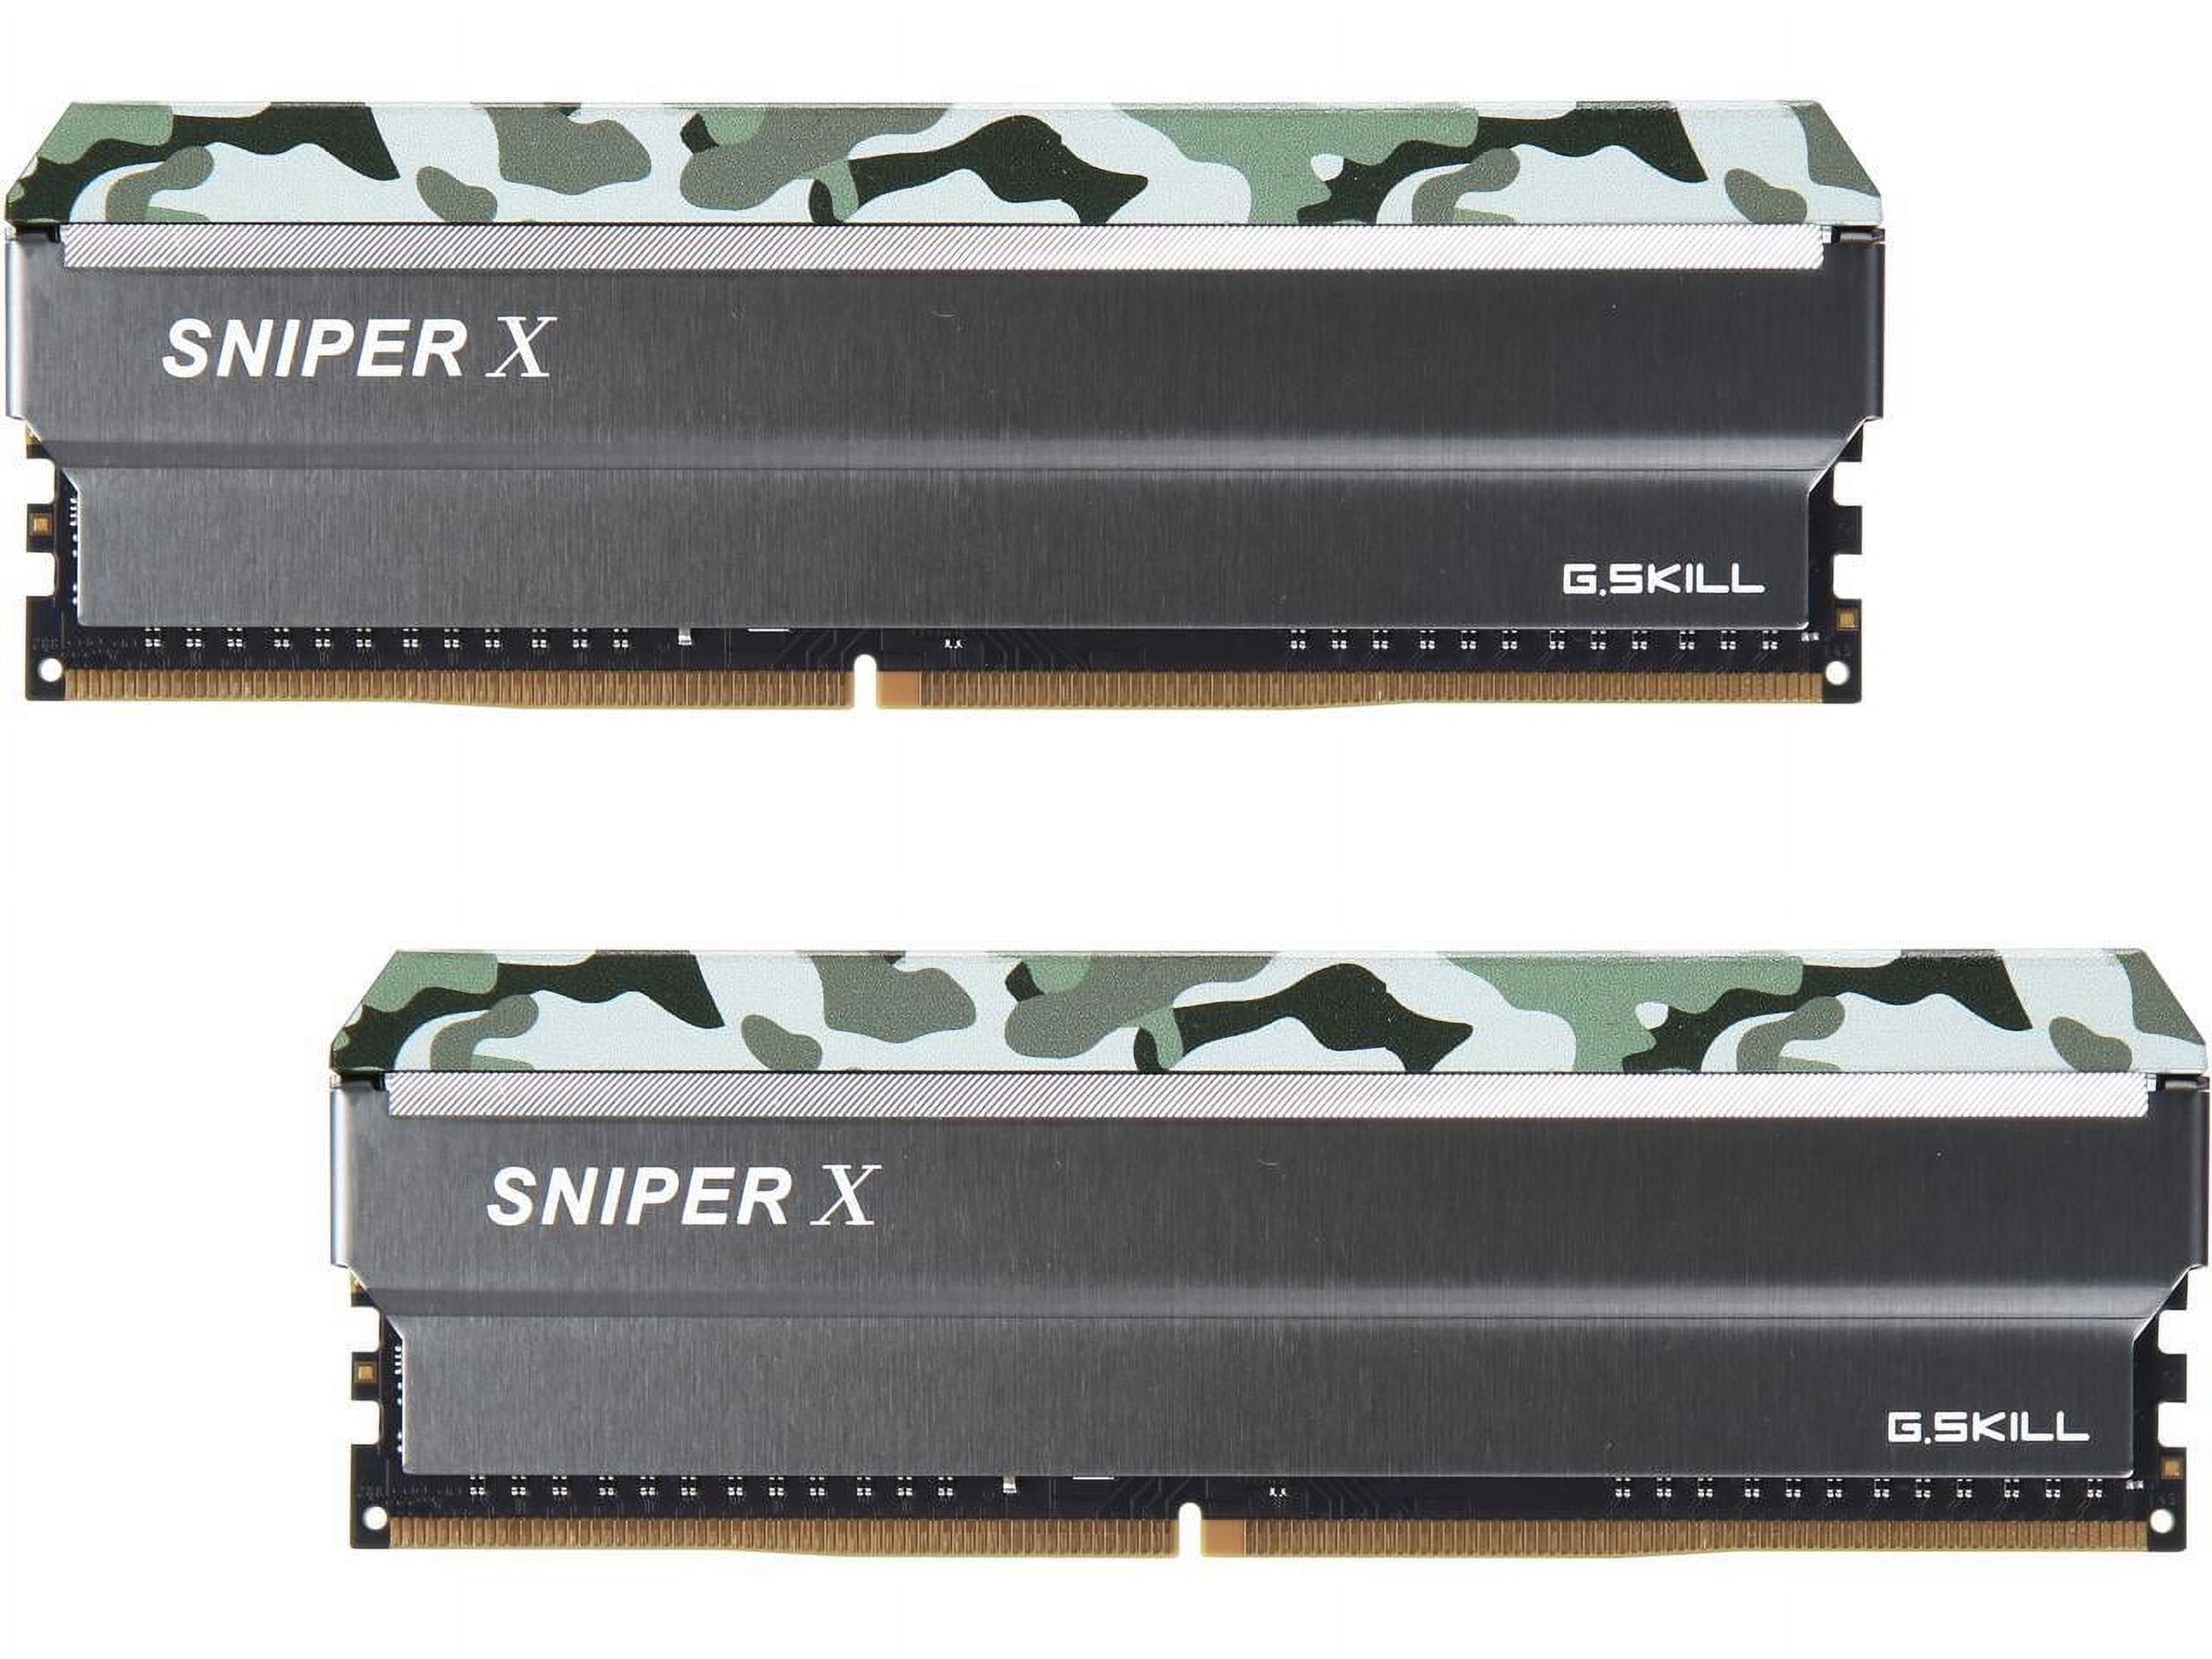 G.SKILL Sniper X Series 16GB (2 x 8GB) DDR4 3000 (PC4 24000) Desktop Memory Model F4-3000C16D-16GSXFB - image 2 of 4